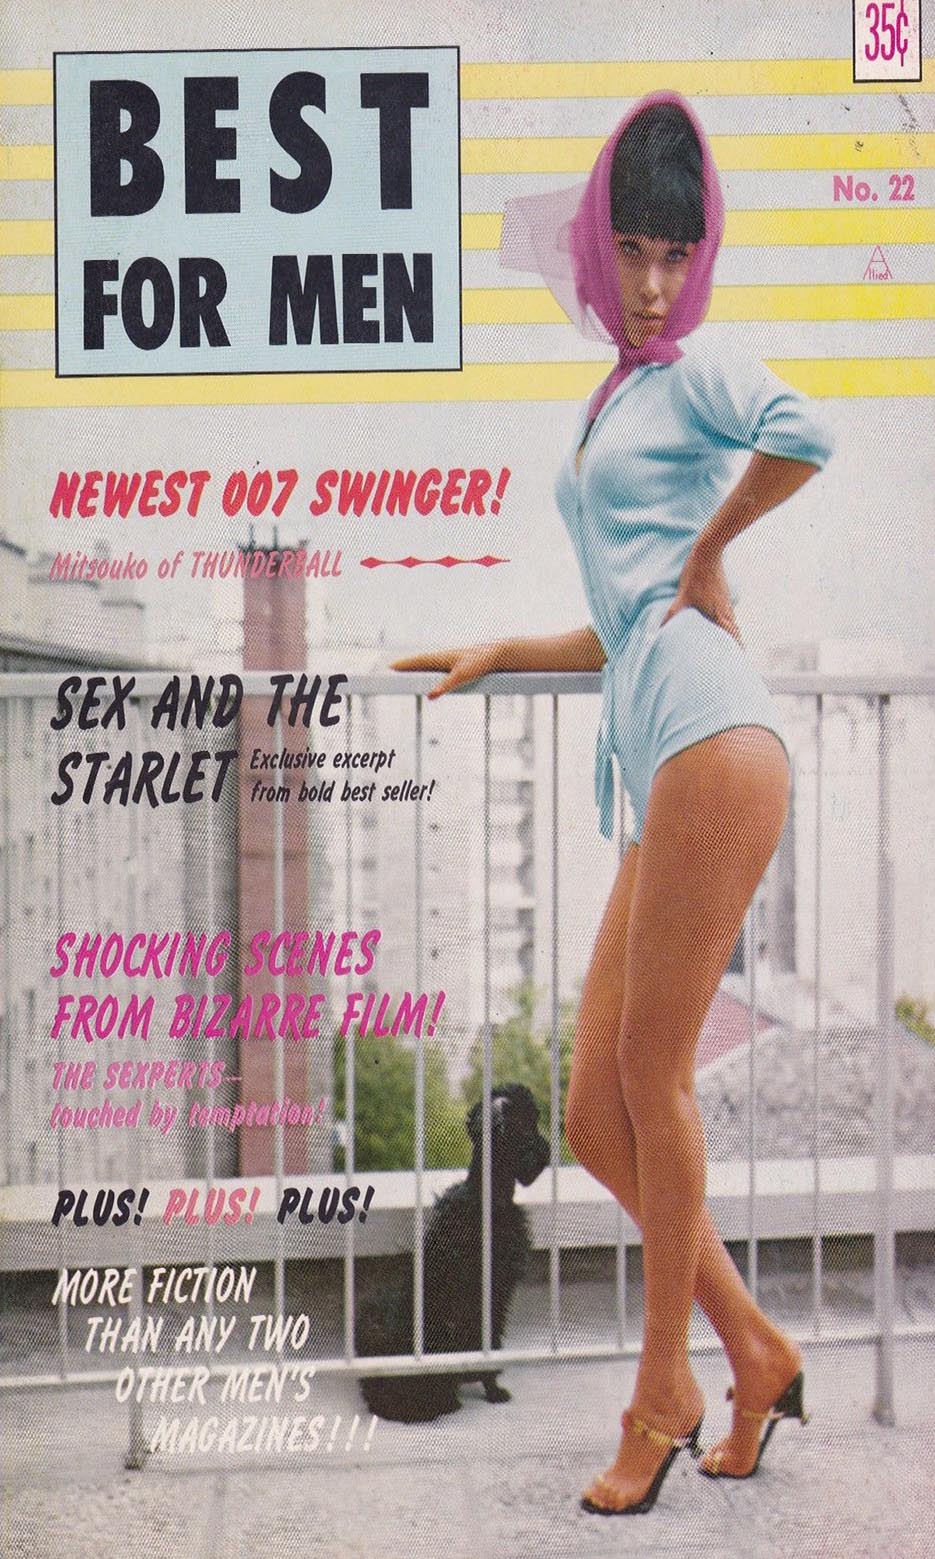 Best Men Aug 1965 magazine reviews